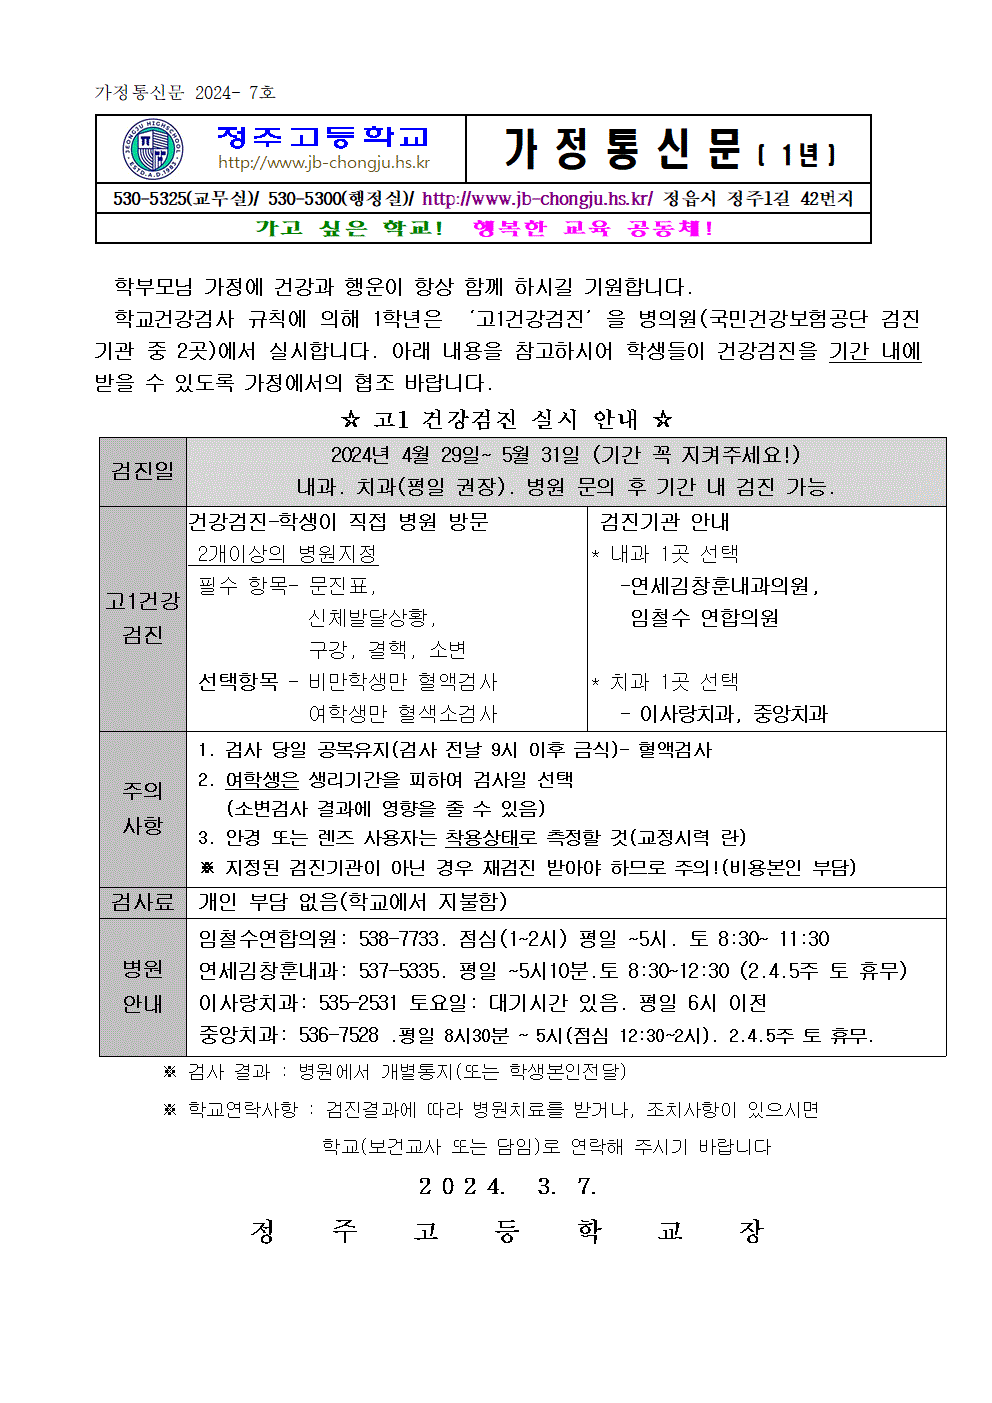 리로-고1 건강검진 안내 가정통신문001